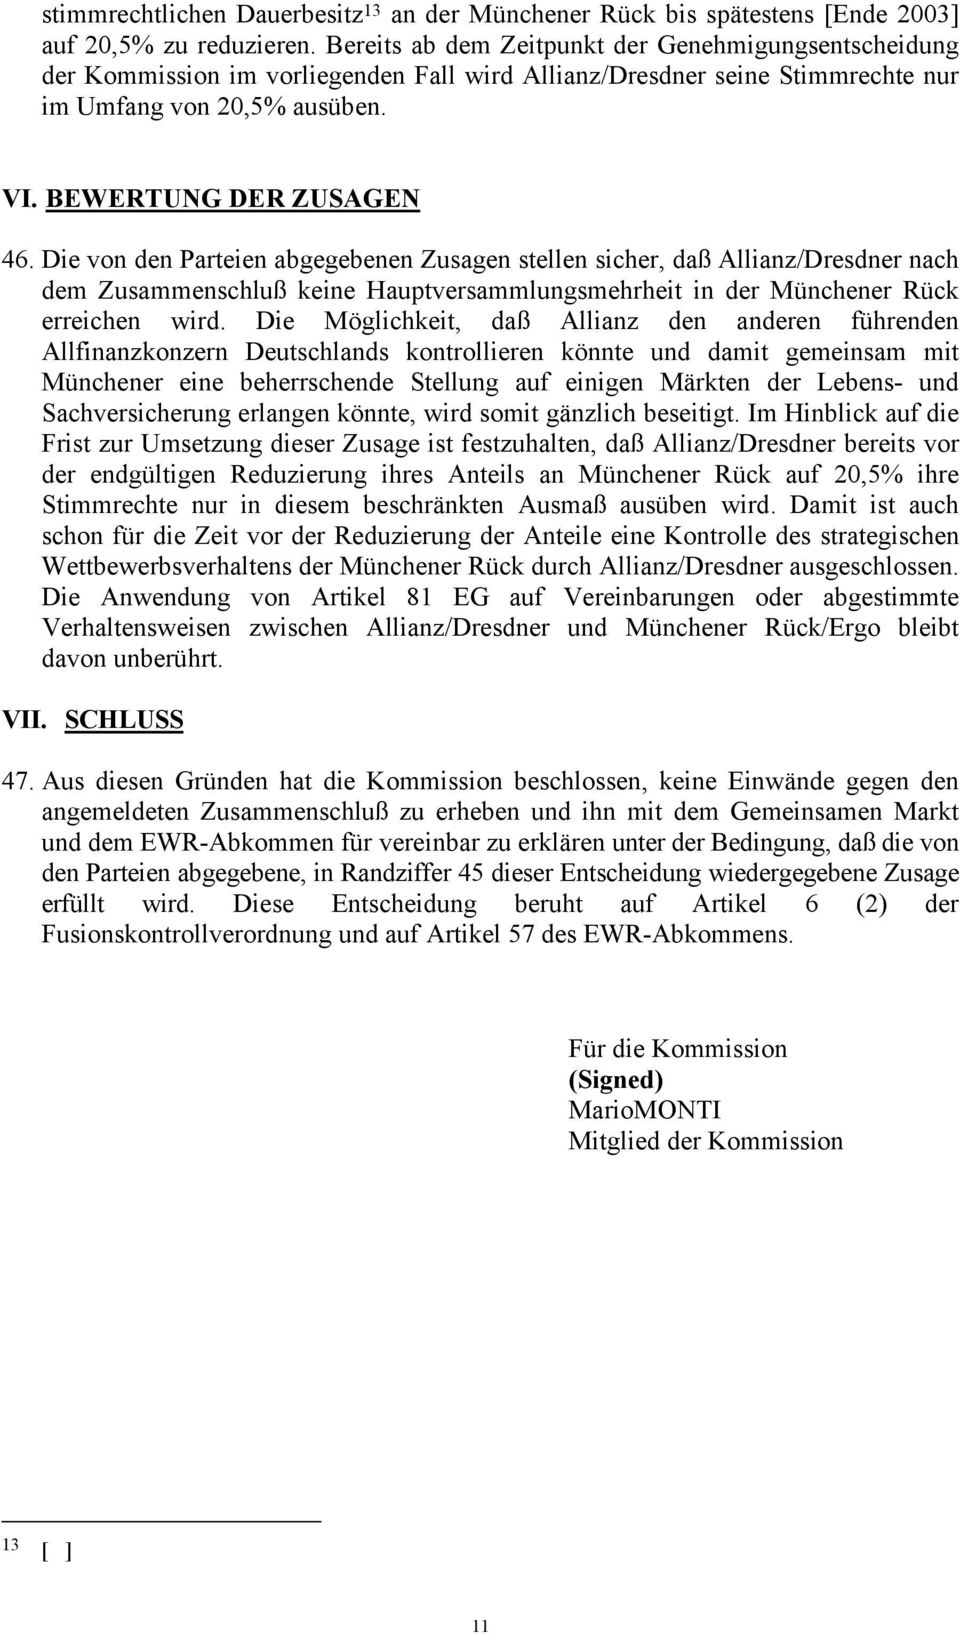 Die von den Parteien abgegebenen Zusagen stellen sicher, daß Allianz/Dresdner nach dem Zusammenschluß keine Hauptversammlungsmehrheit in der Münchener Rück erreichen wird.